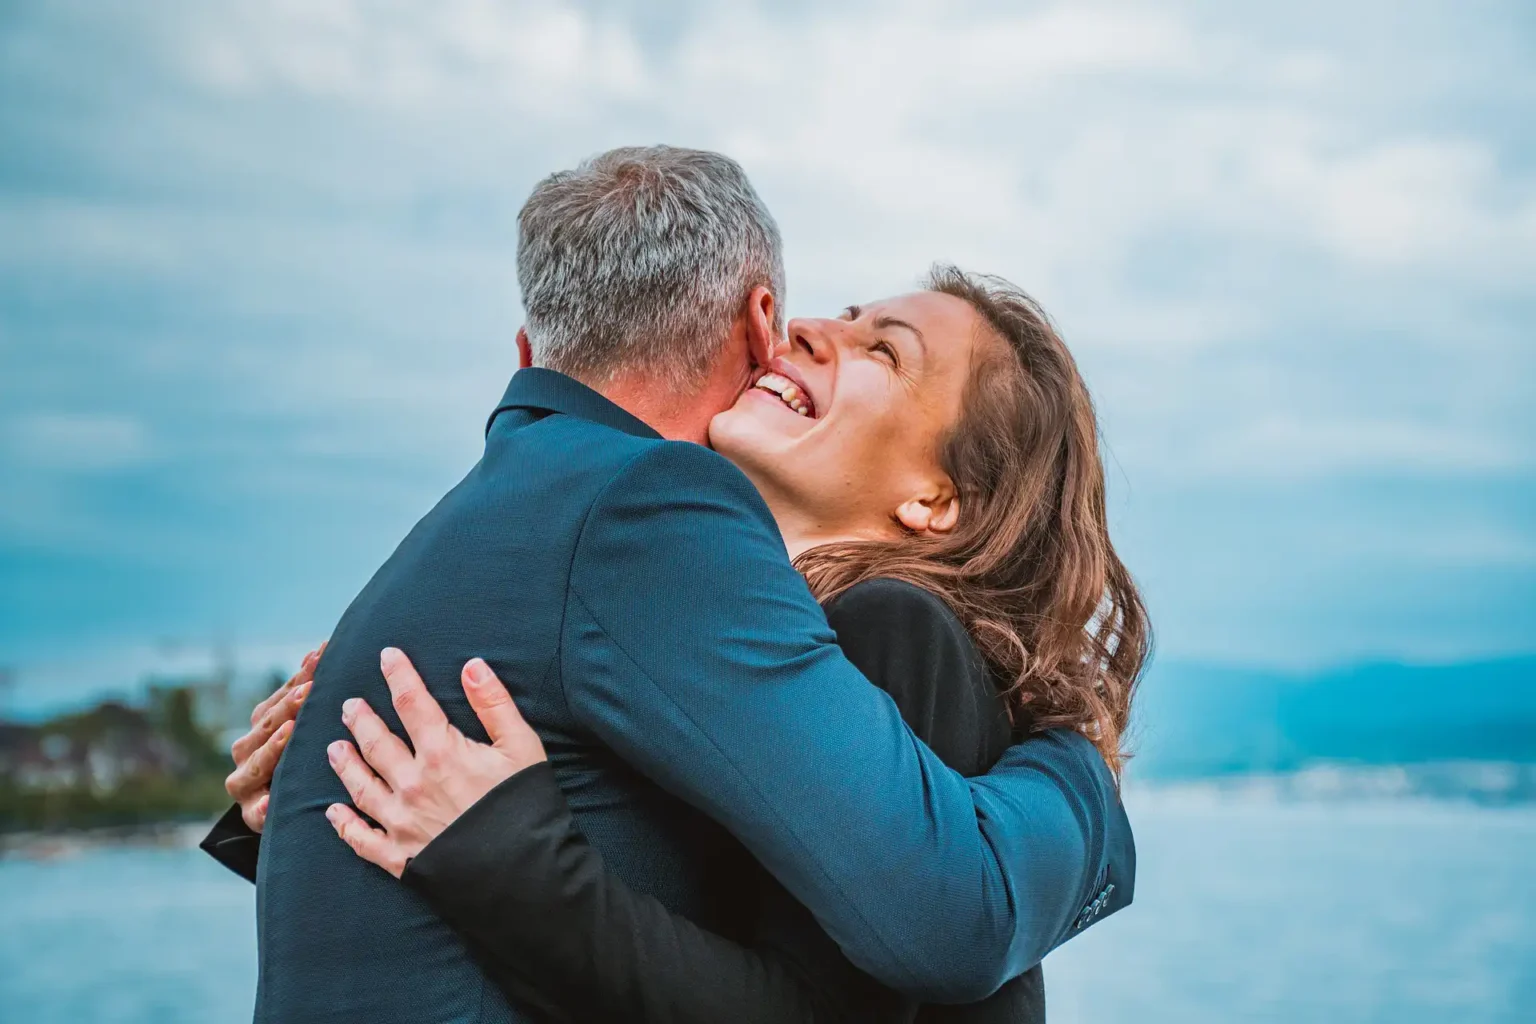 Nell'immagine una coppia con un uomo e una donna che si abbracciano e la donna sorride.